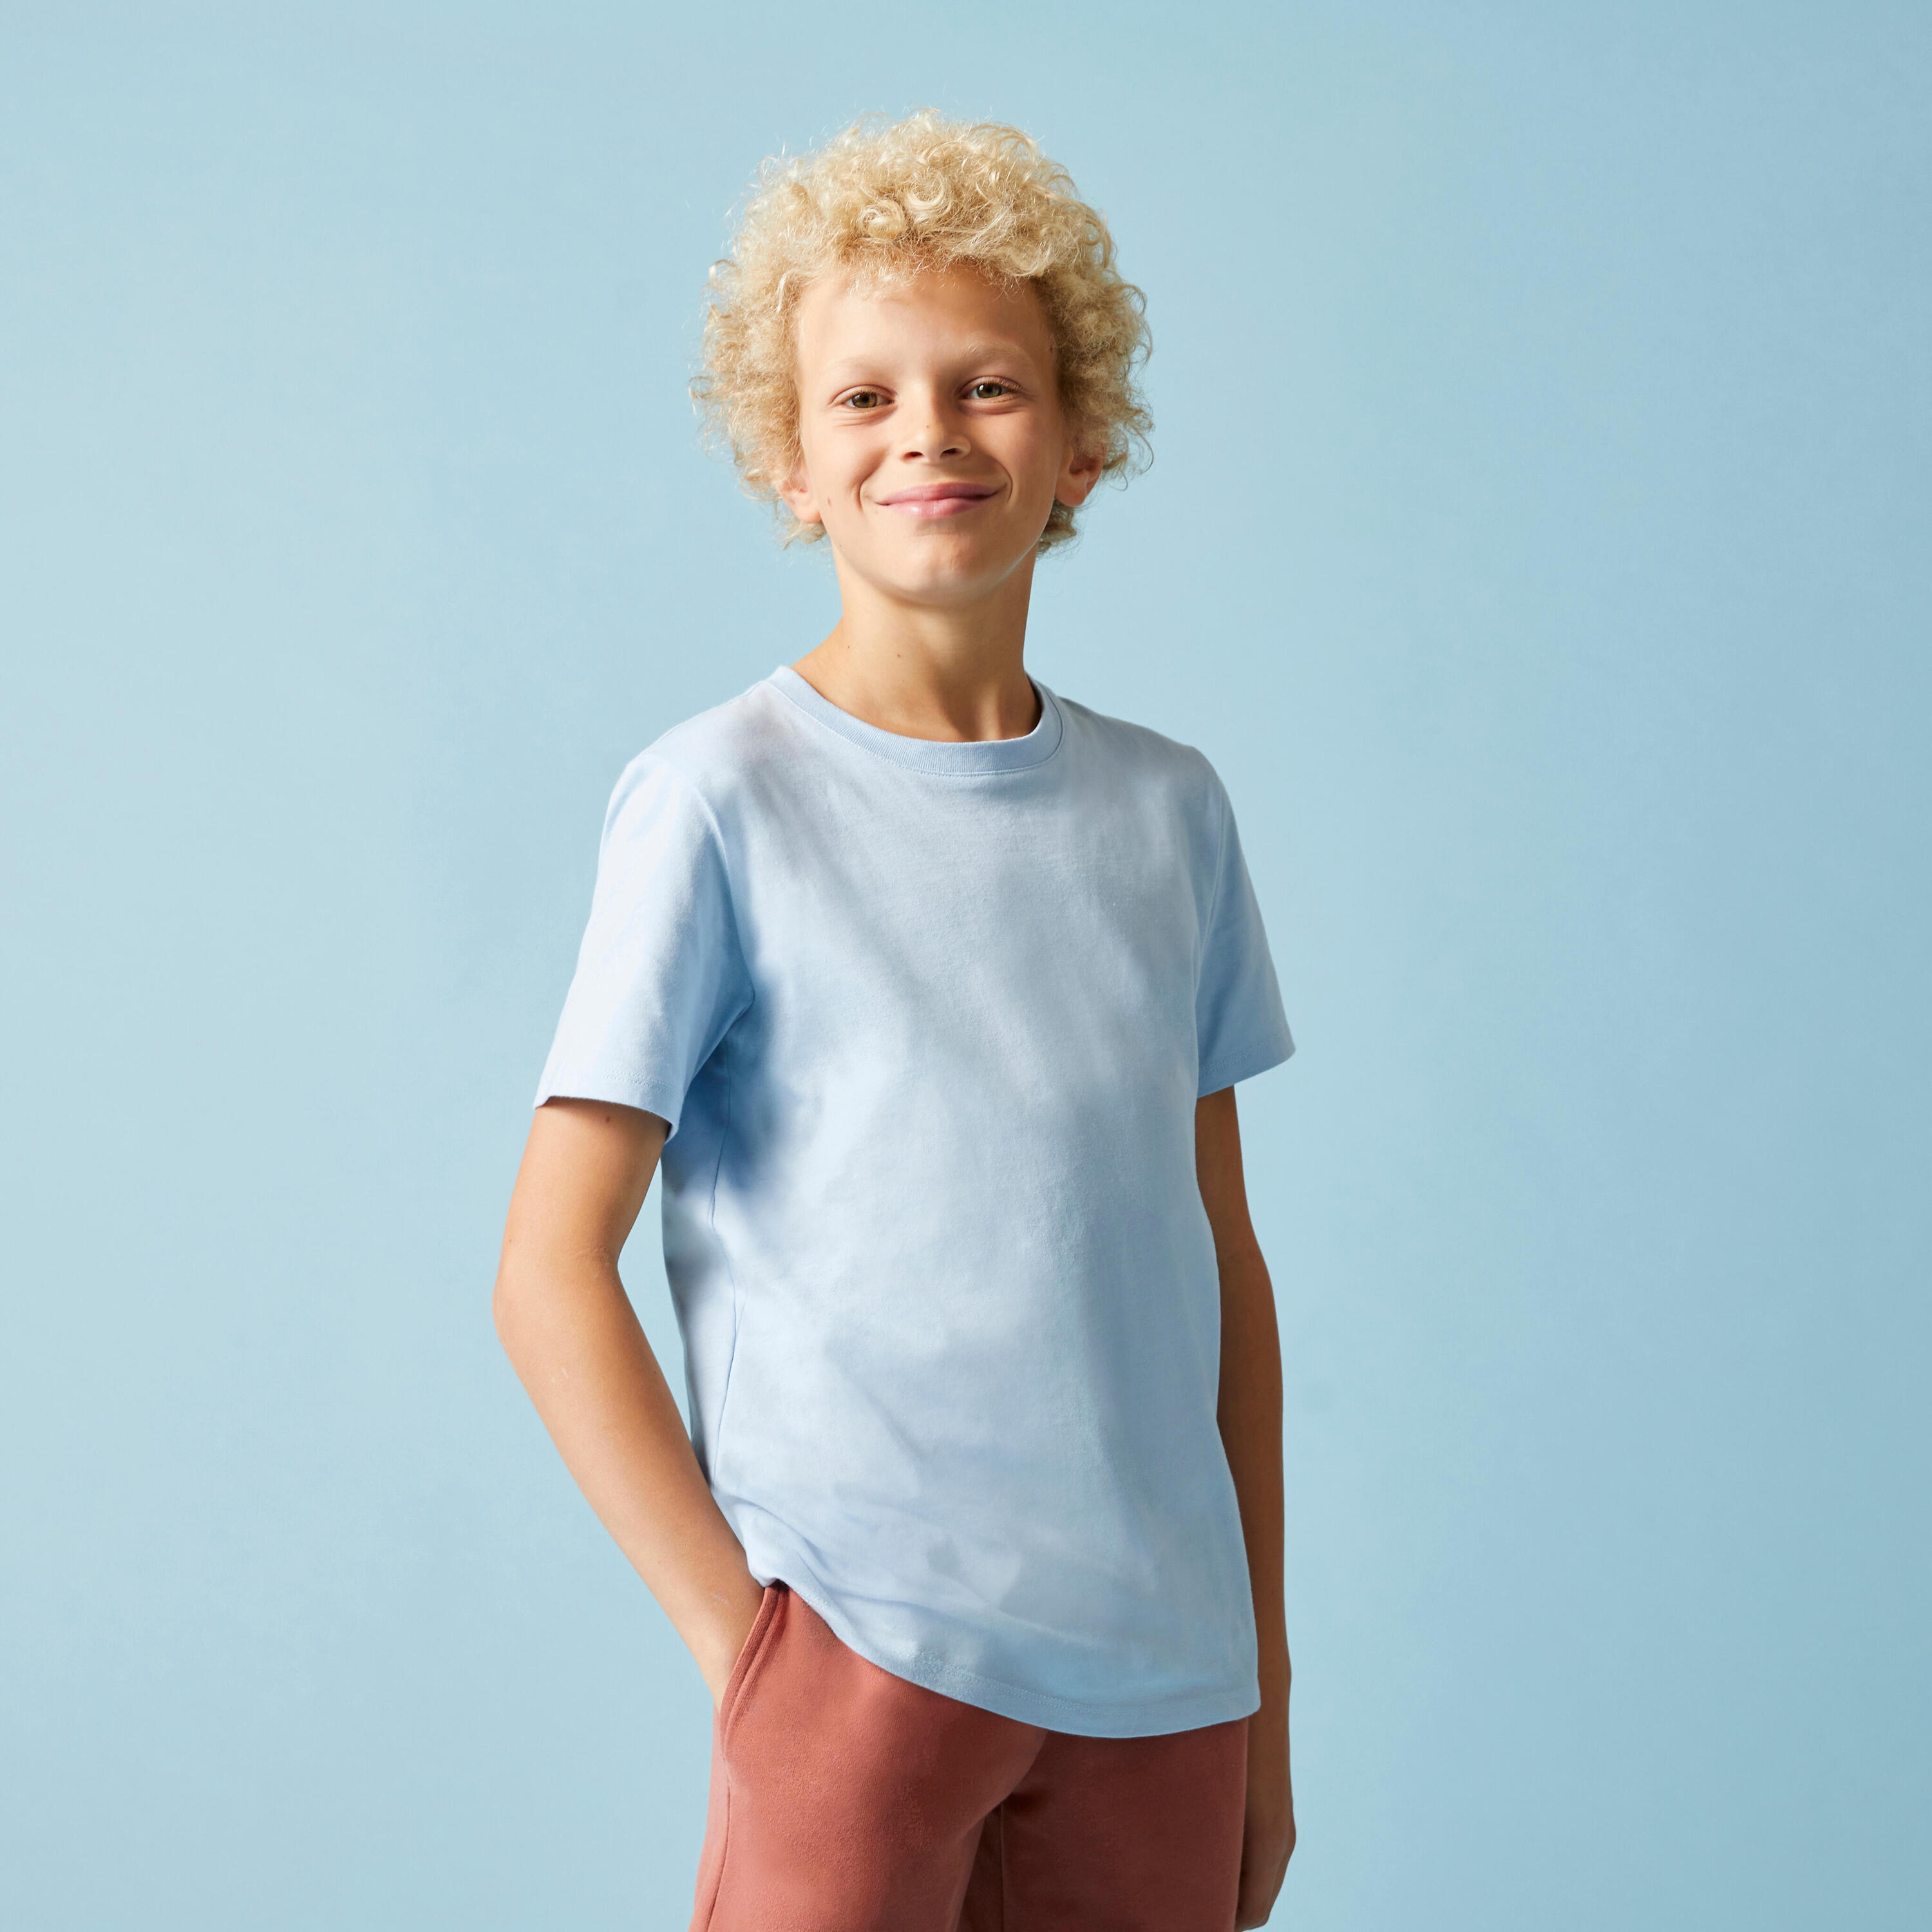 Kids' Unisex Cotton T-Shirt - Sky Blue 4/8